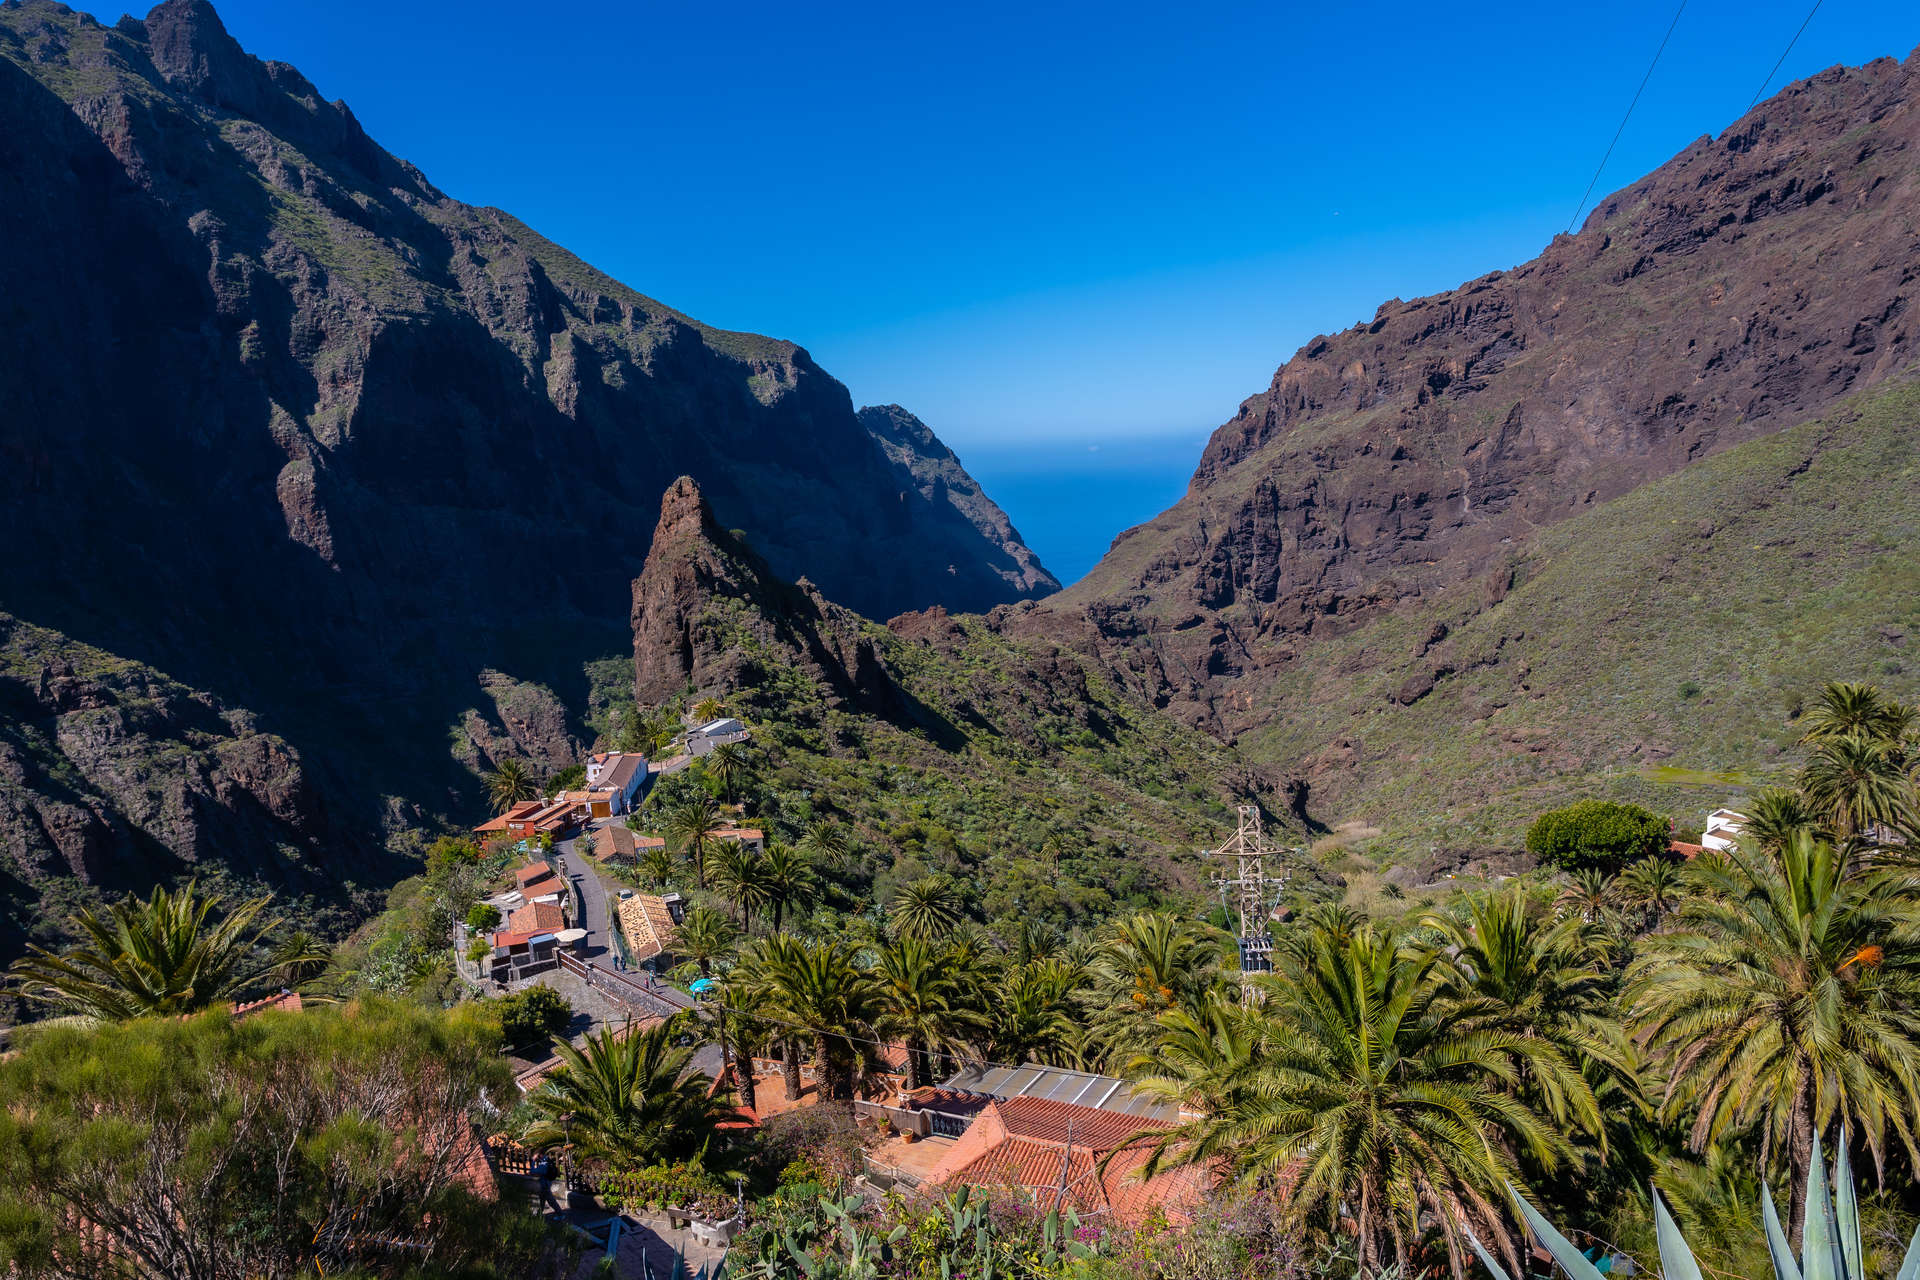 Rocks in the Masca gorge, Tenerife